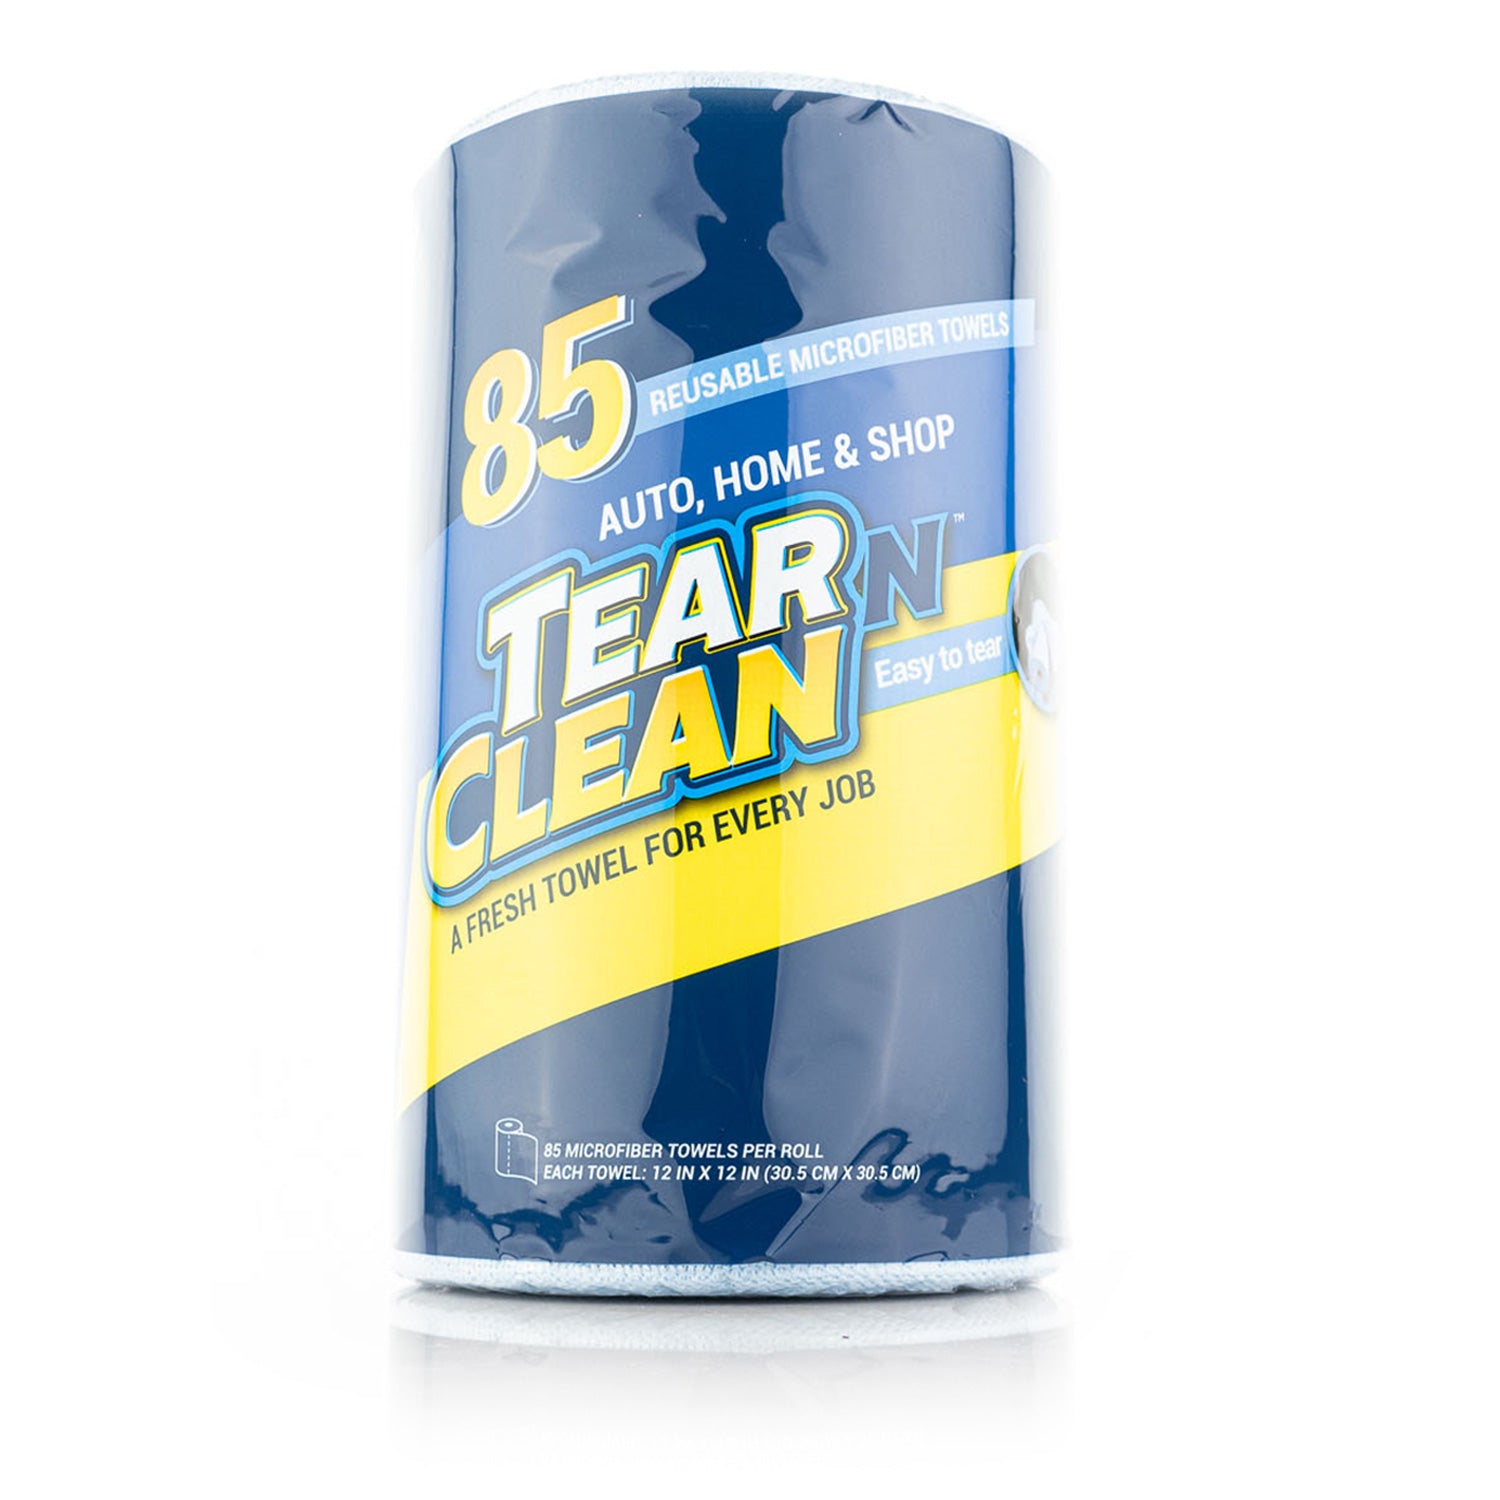 tear-n-clean-85-towel-roll